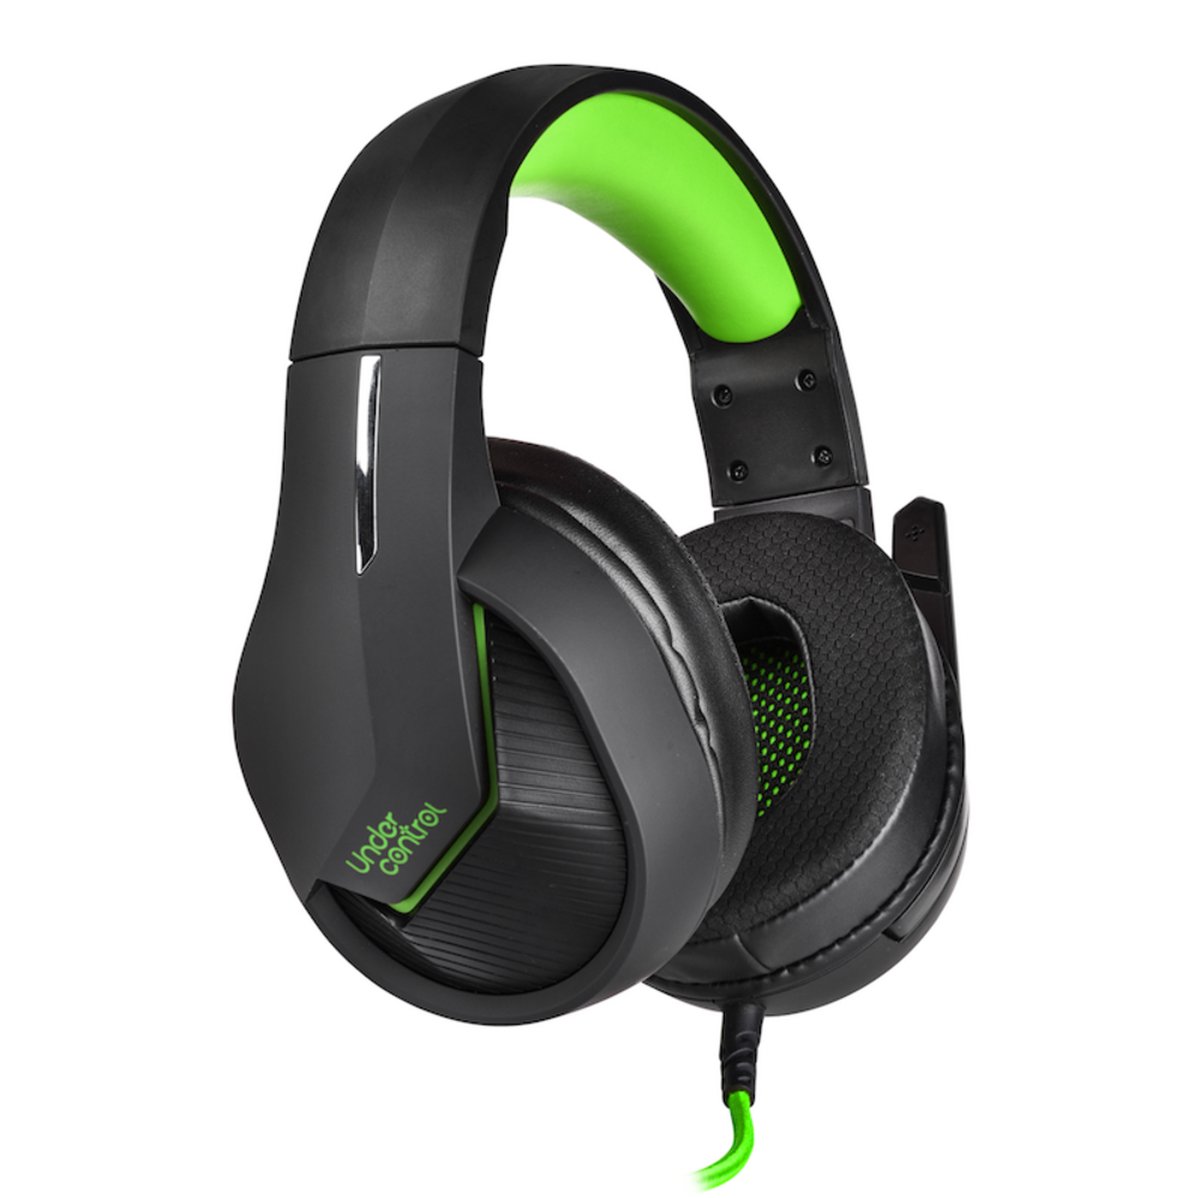 Under Control Xbox gaming headset groen zwart - bedraad - 3.5m jack